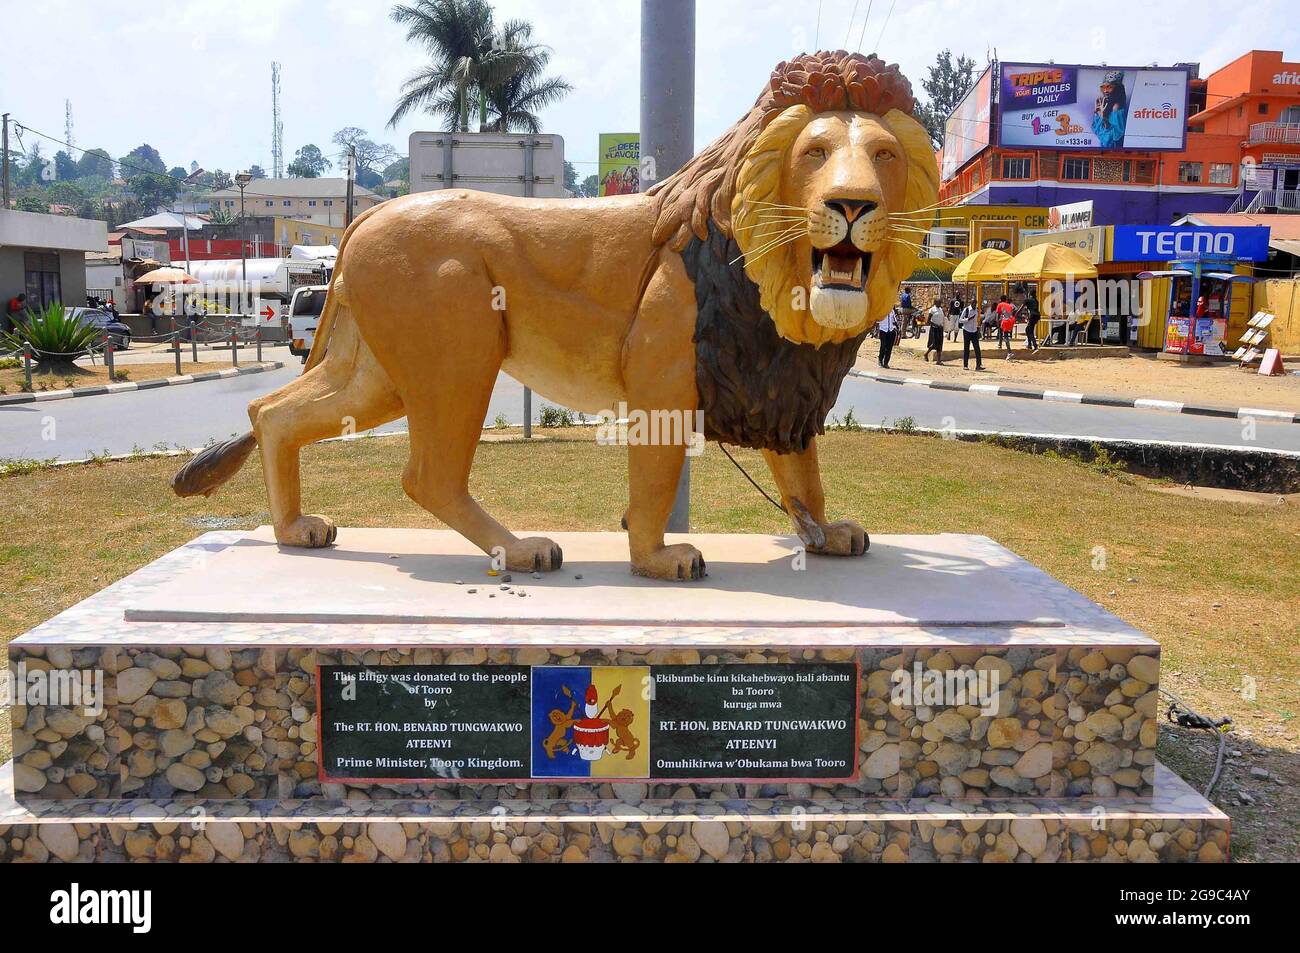 Un monumento de un león en el corazón del reino de Tooro. Rukirabasaija Oyo Nyimba Kabamba Iguru Rukidi IV, Rey Oyo, es el Omukama reinante de Toro, en Uganda. Oyo se convirtió en Omukama en 1994 después de la muerte de su padre. Toro, Uganda Occidental. Foto de stock